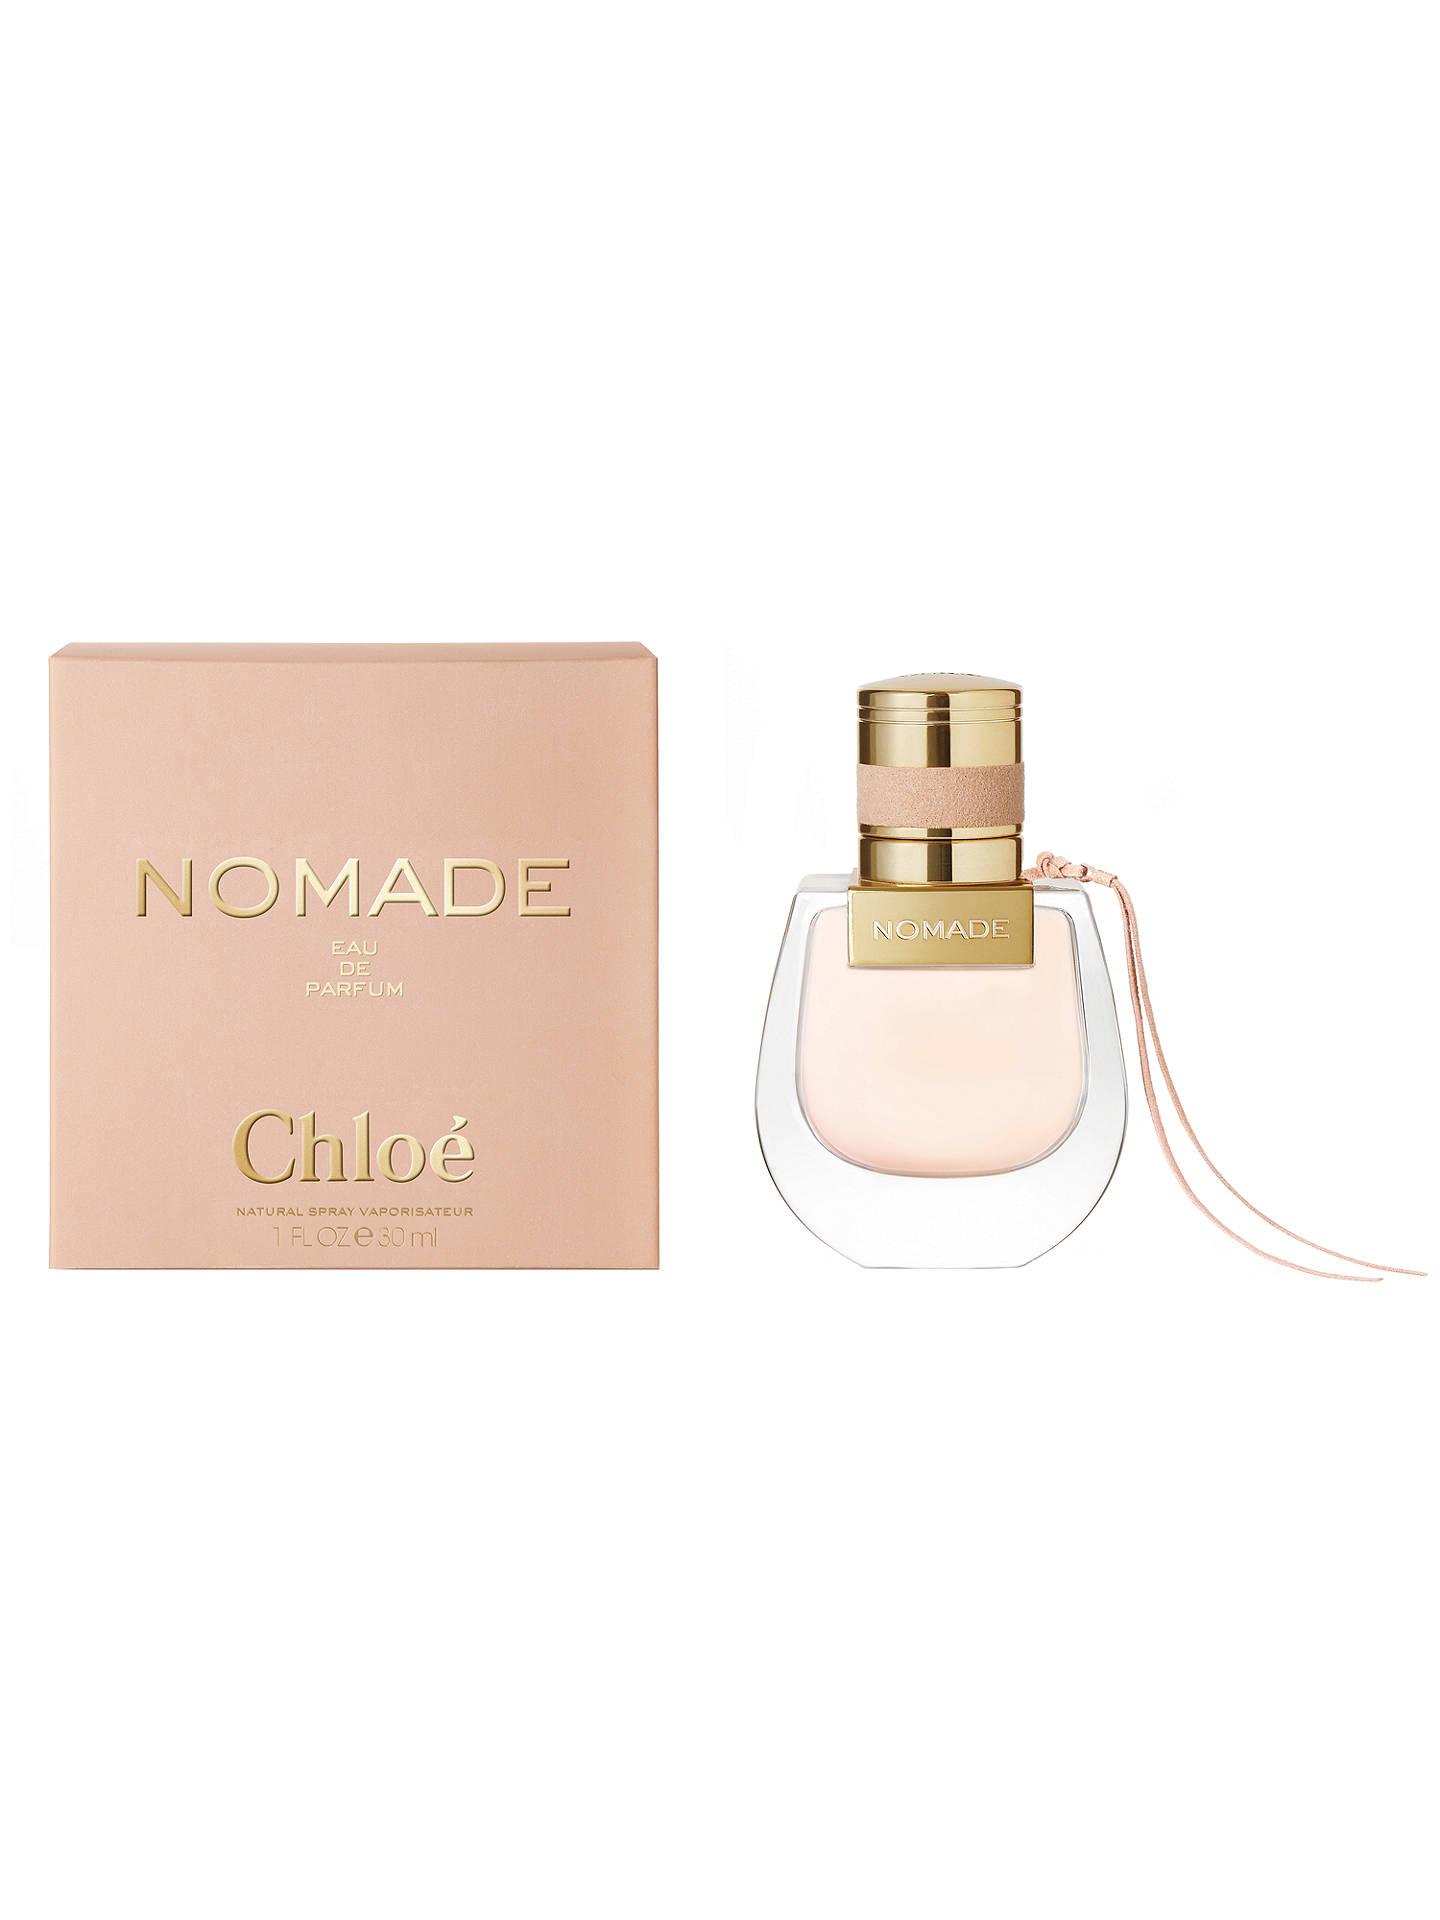 Chloé Nomade Eau de Parfum at John Lewis & Partners